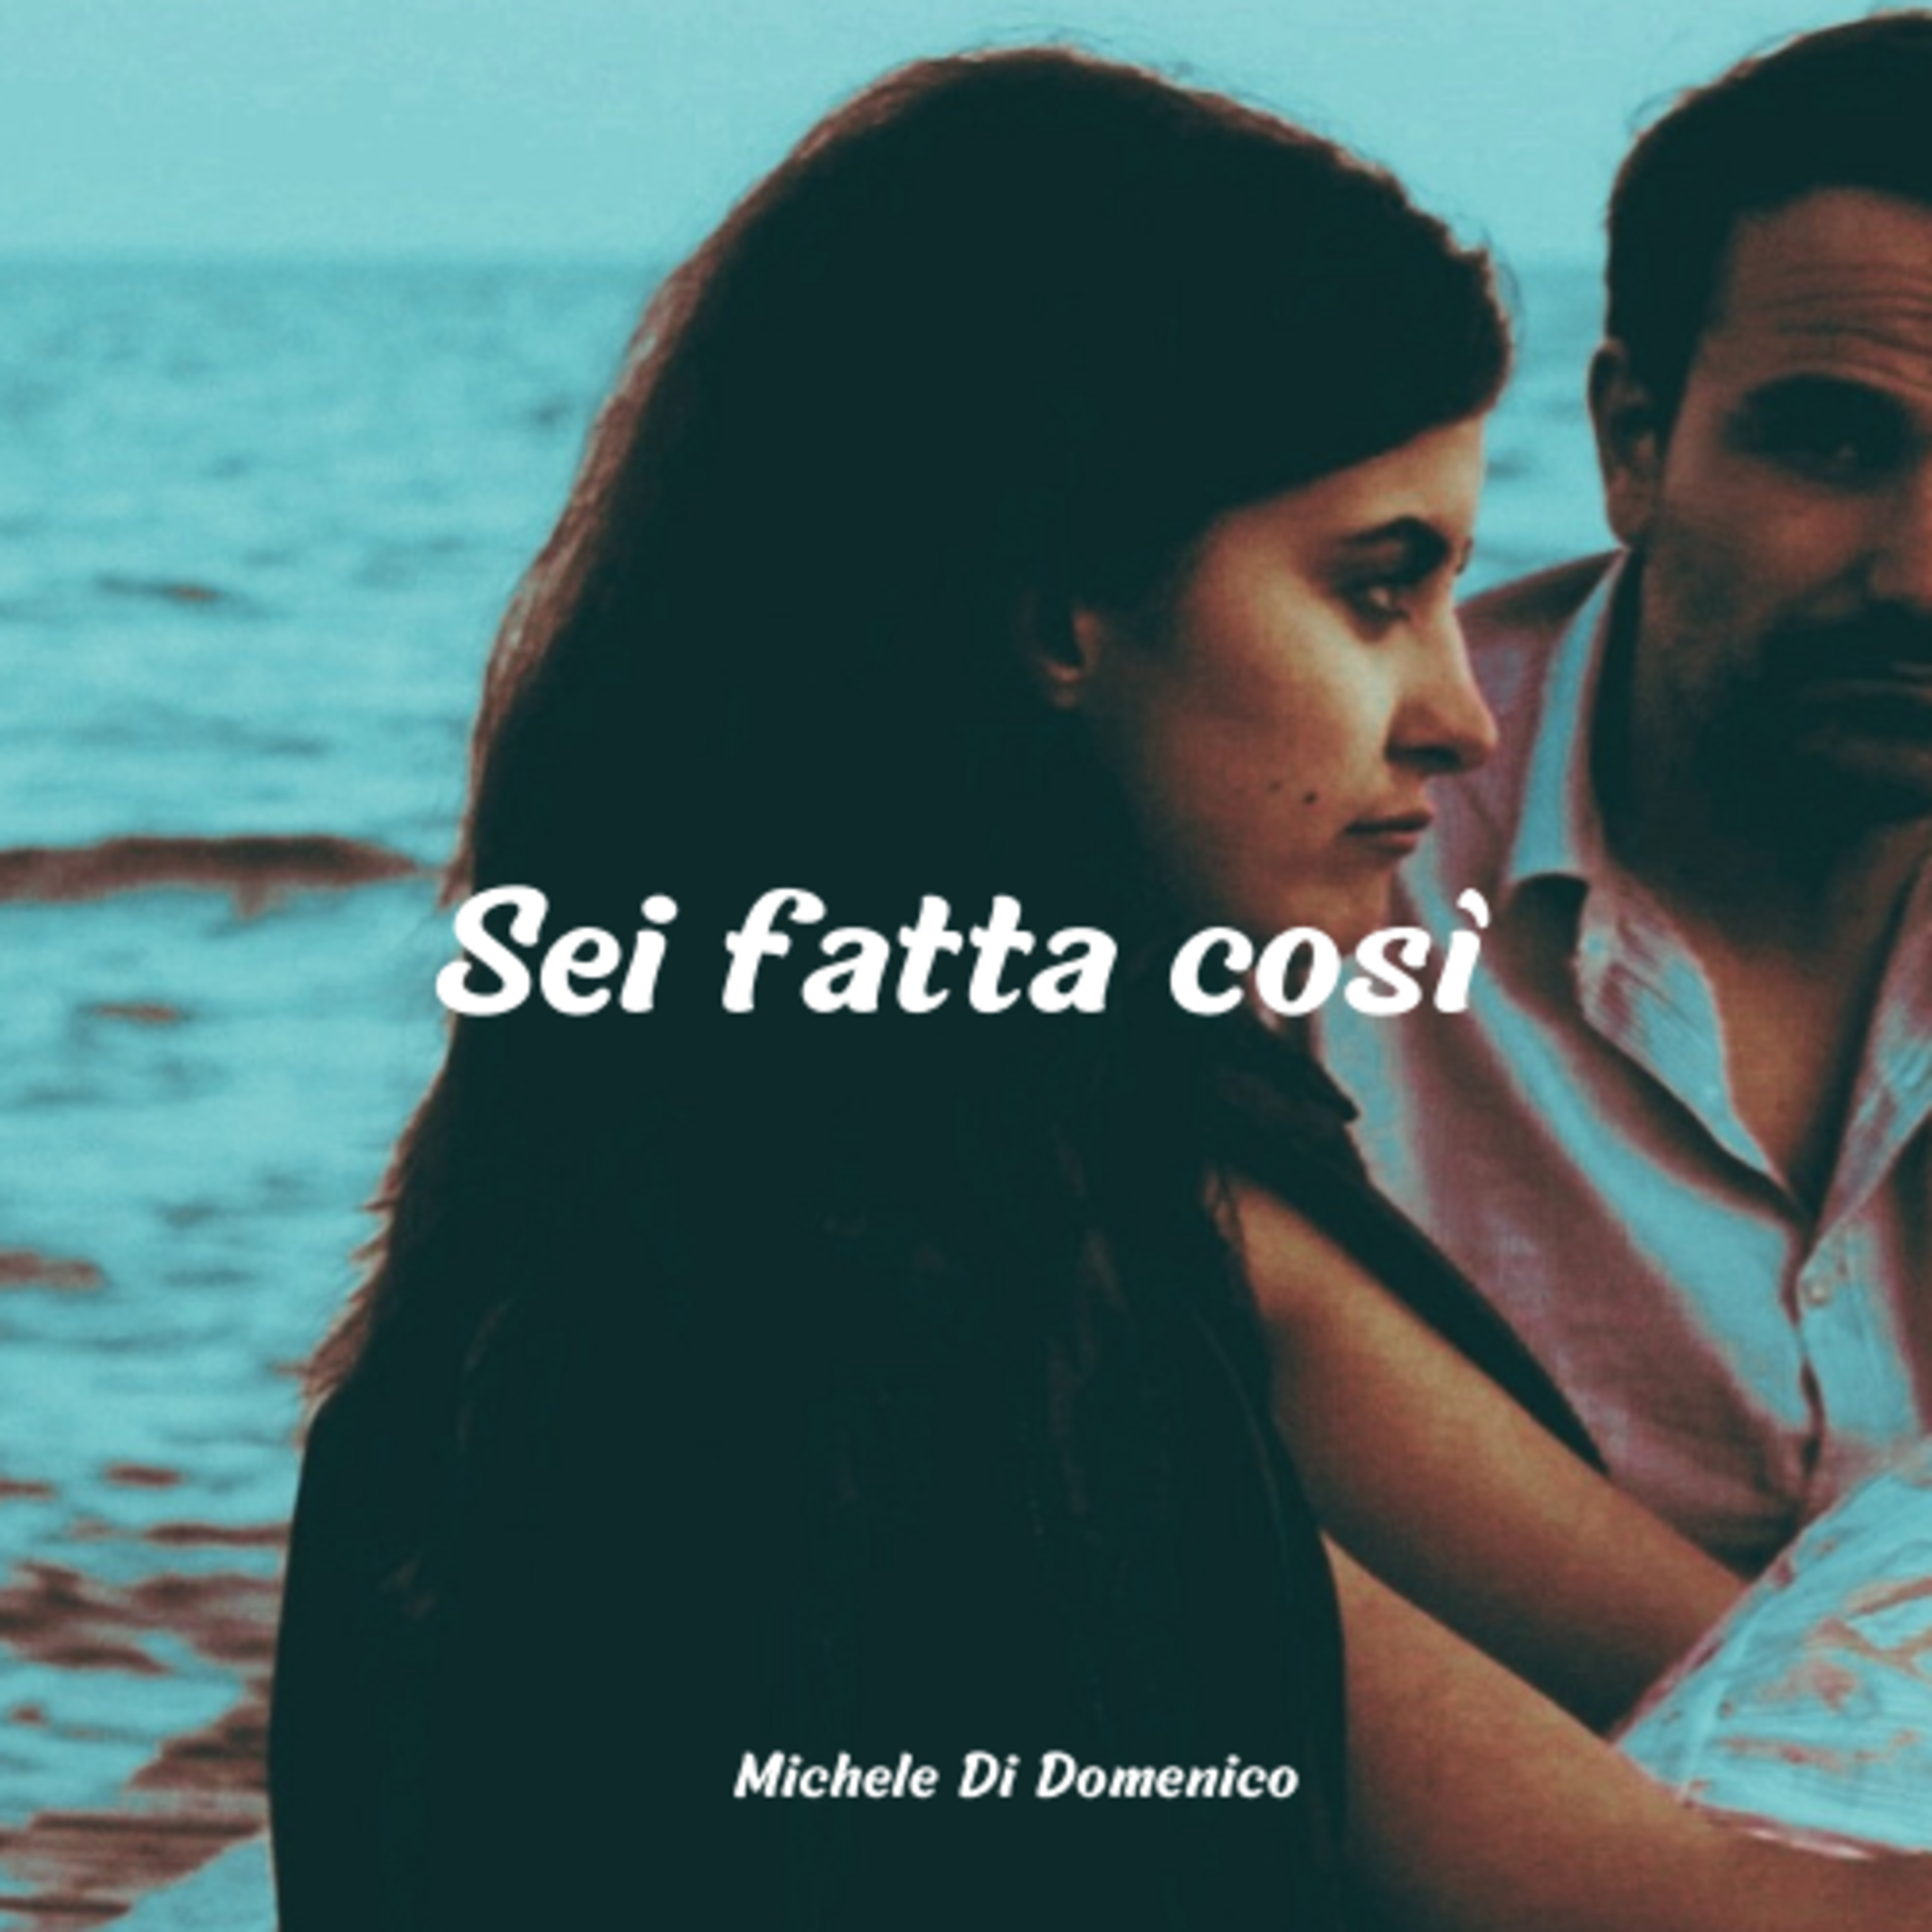 Michele Di Domenico presenta il suo nuovo singolo 